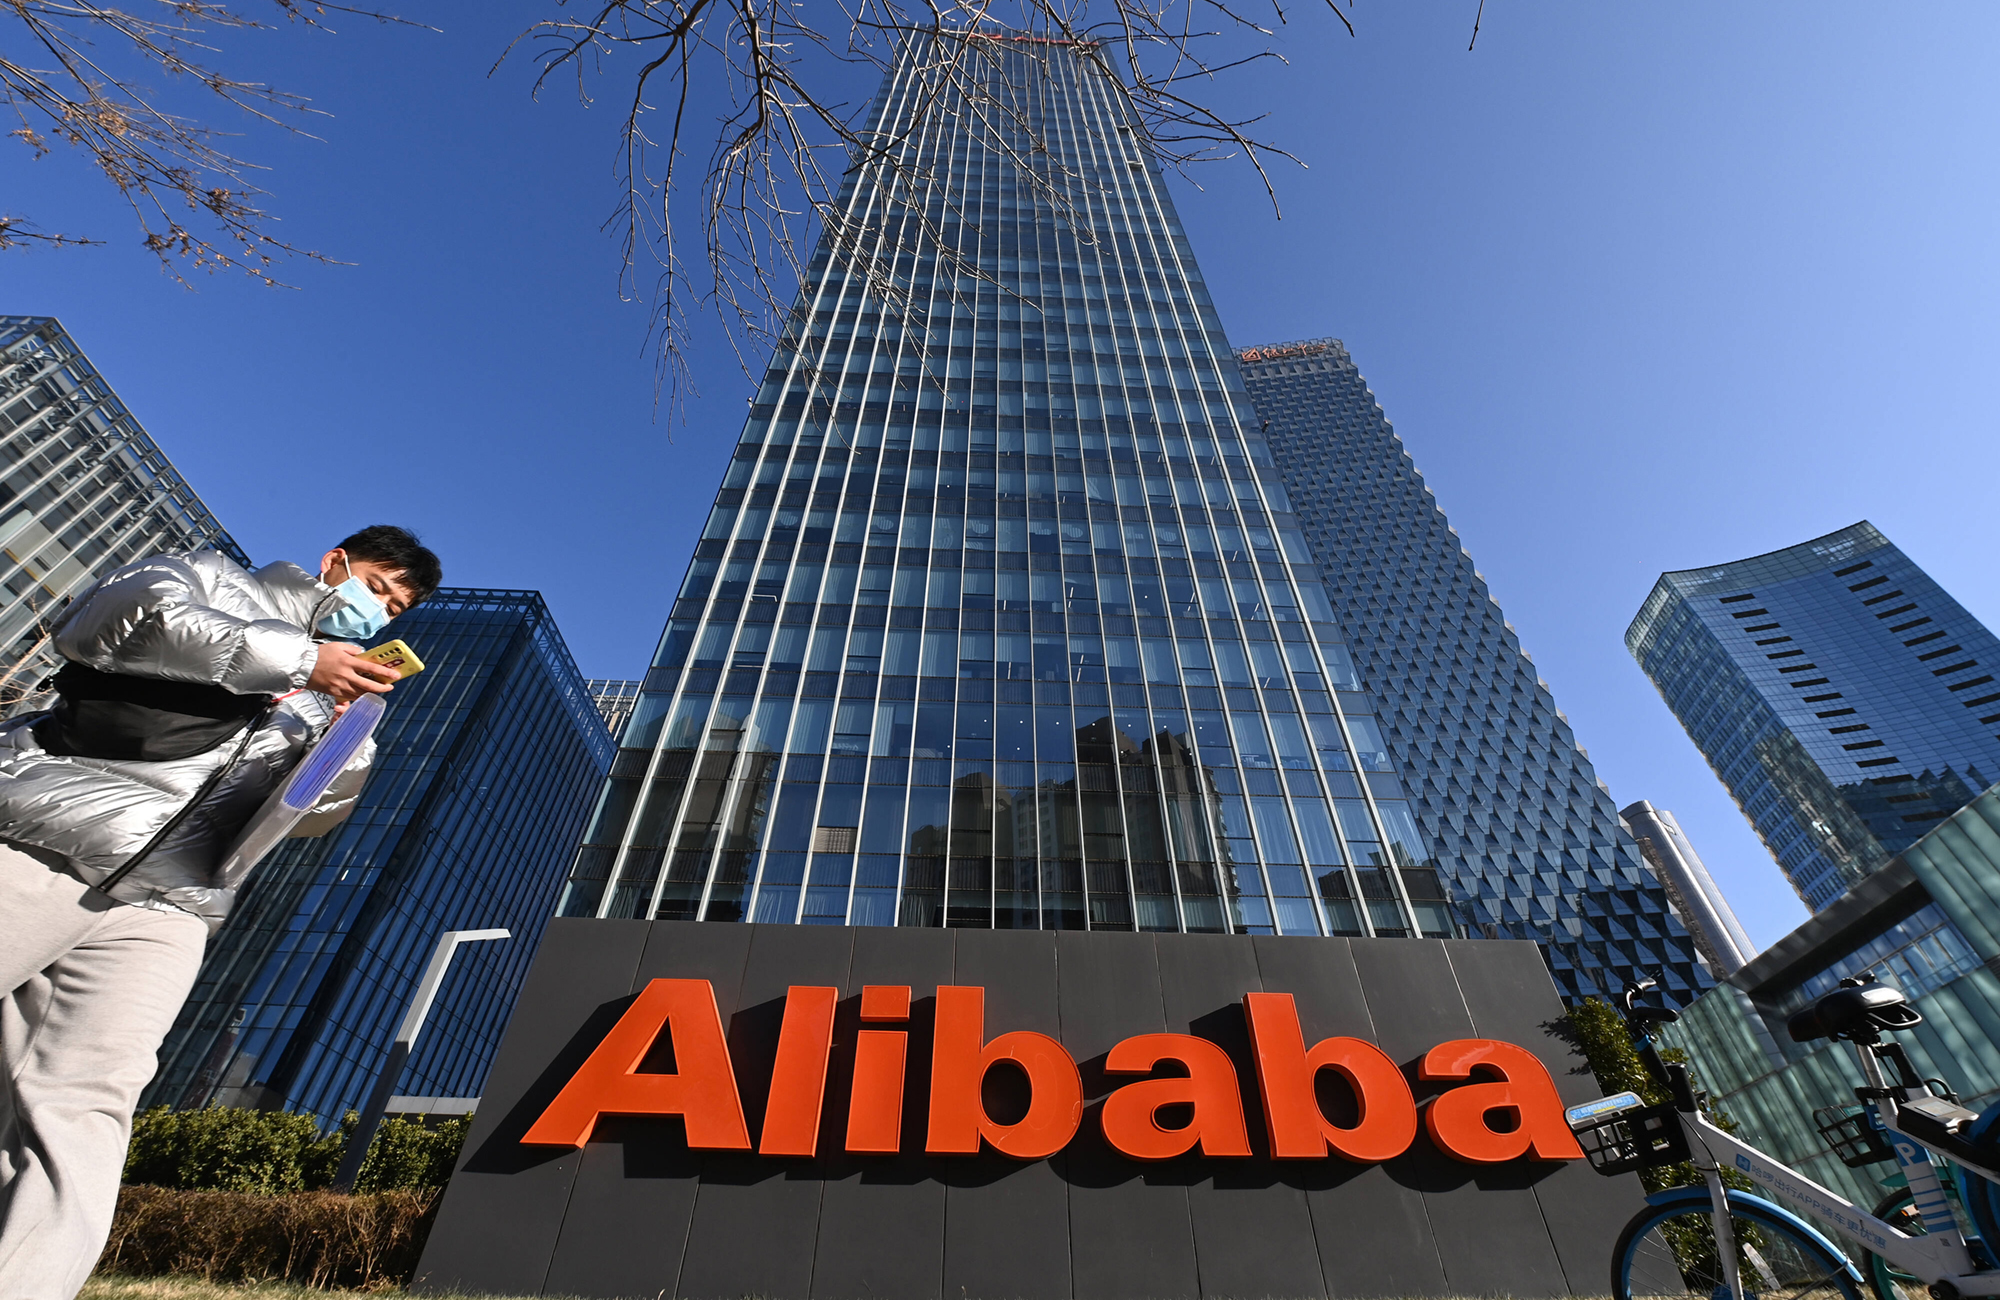 Auf Platz eins liegt Alibaba: Zum Stichtag 30. Juni 2020 hatte die Alibaba Group eine Nutzerreichweite von über einer Milliarde weltweit aktiver Kunden, darunter 807 Millionen in China und 194 Millionen außerhalb des Landes. Foto: IMAGO / ZUMA Press